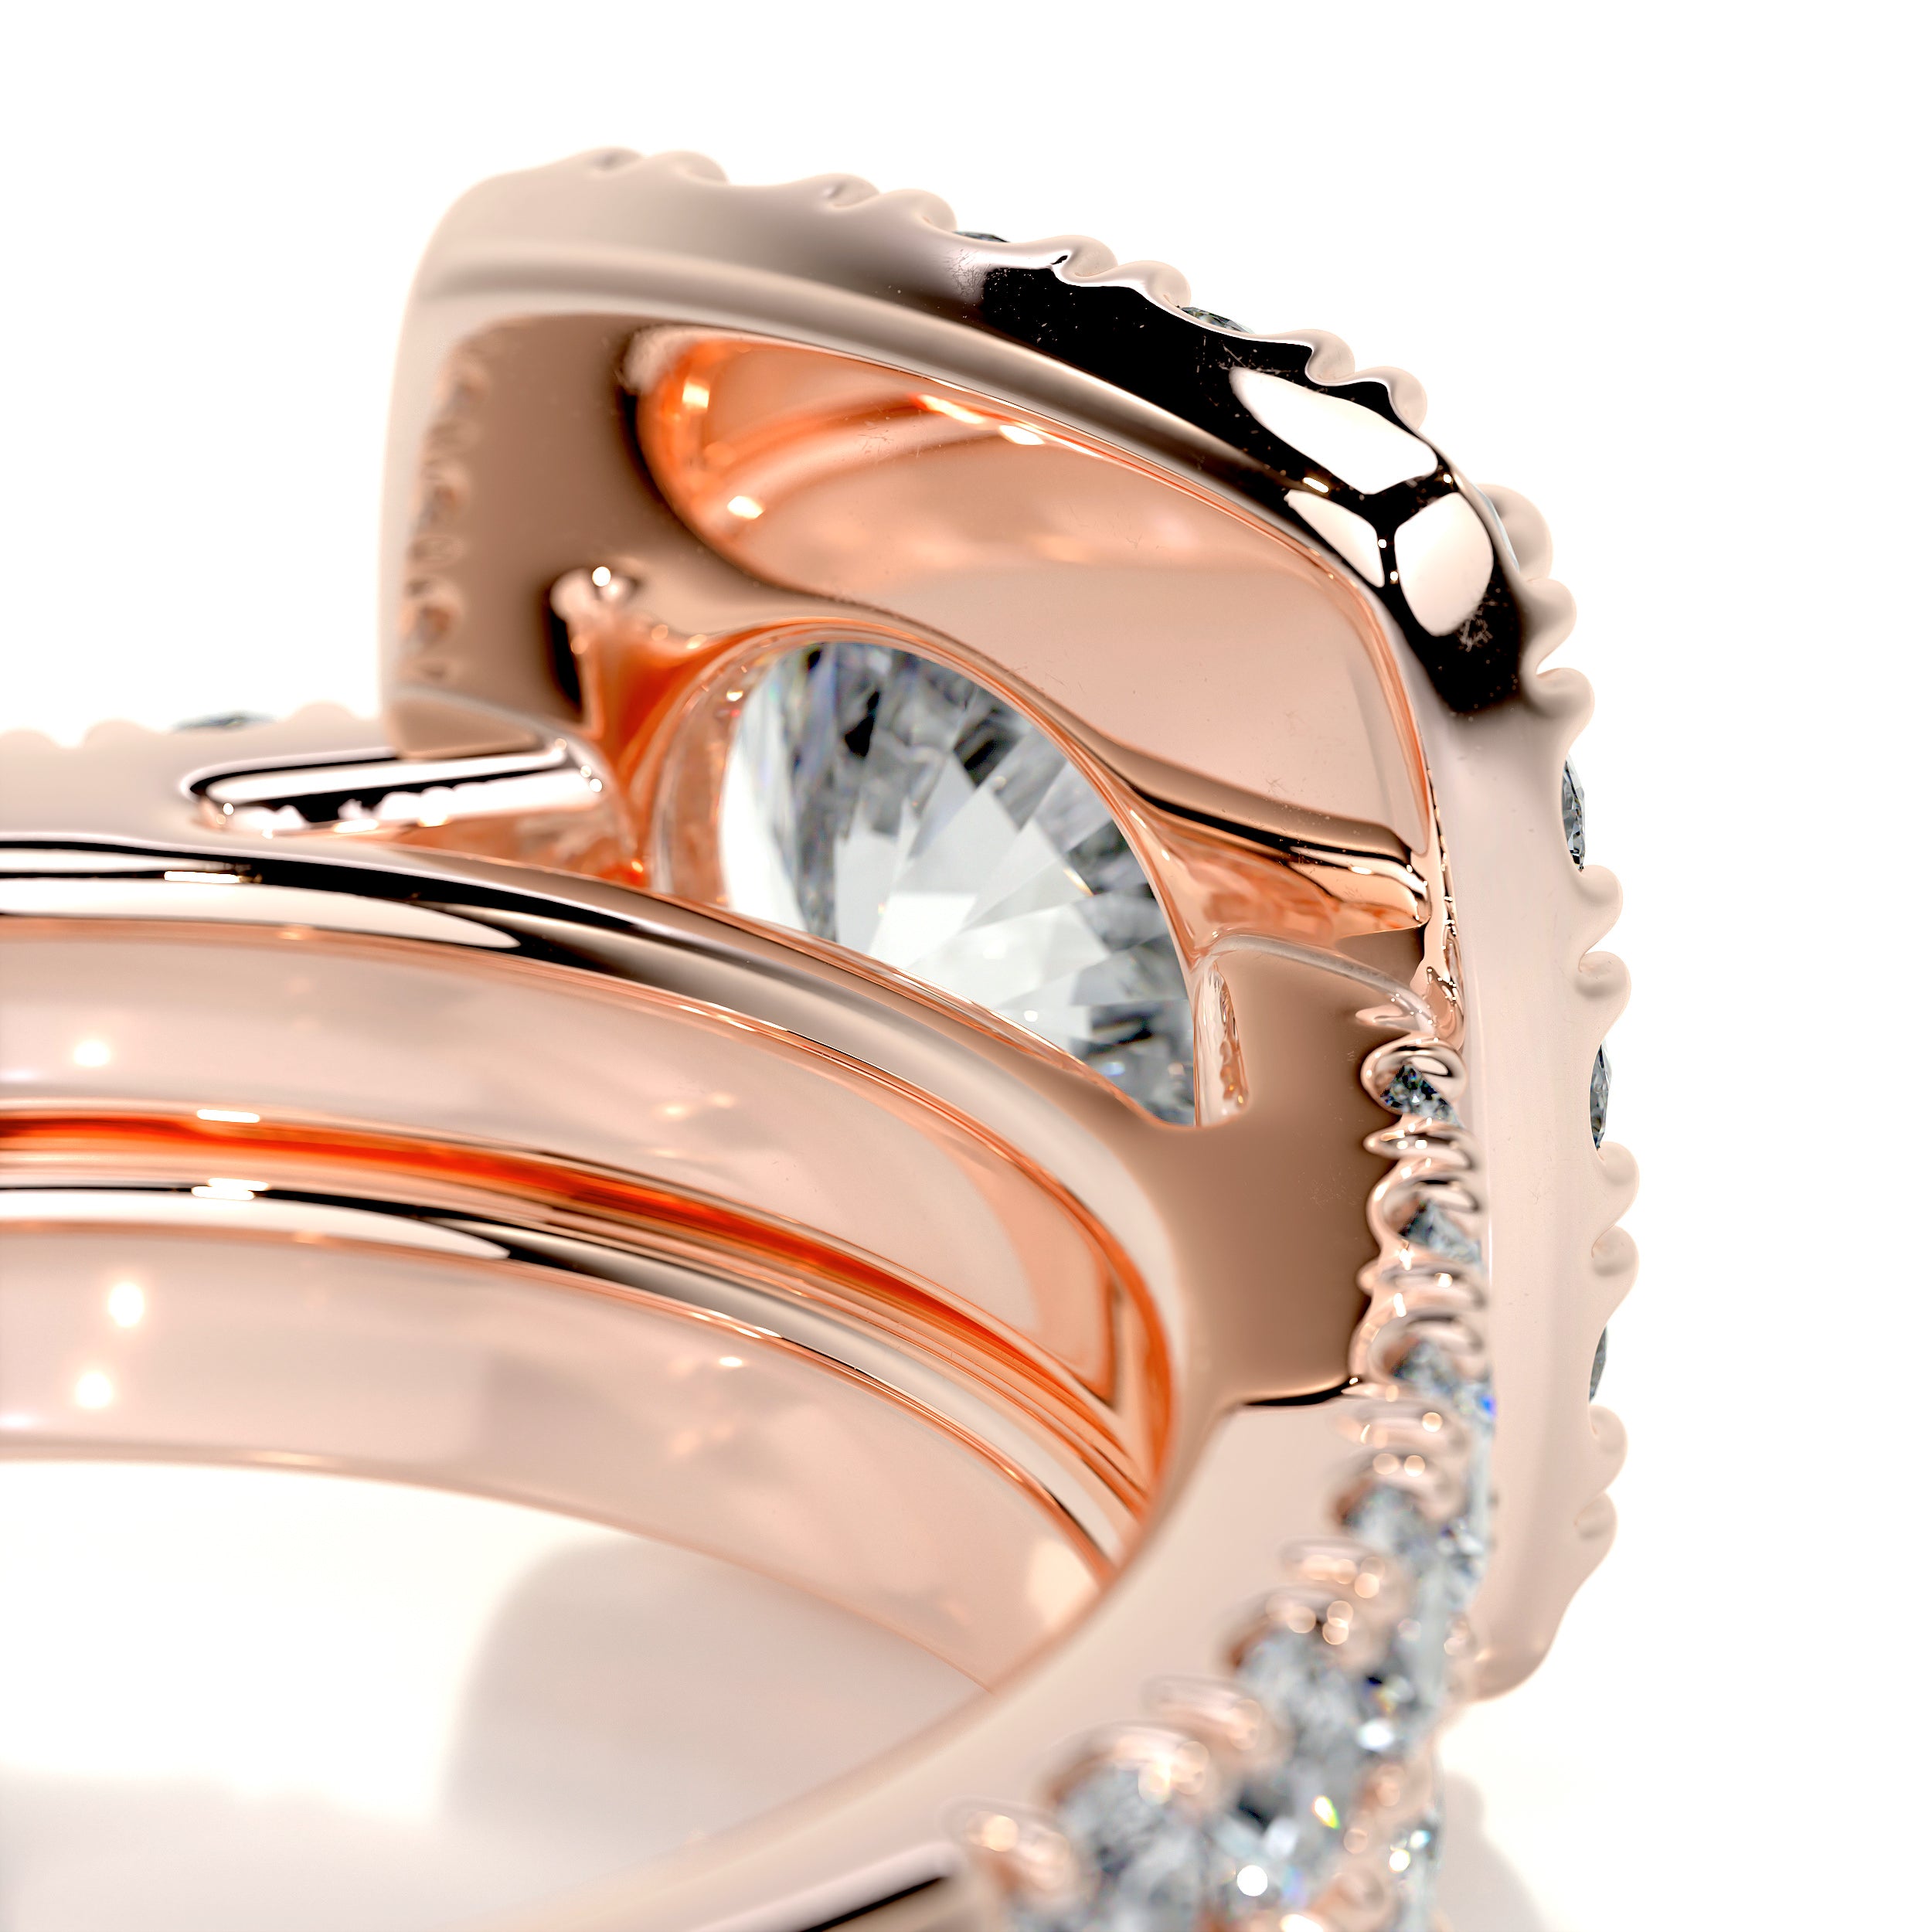 Sienna Diamond Bridal Set   (2.3 Carat) -14K Rose Gold